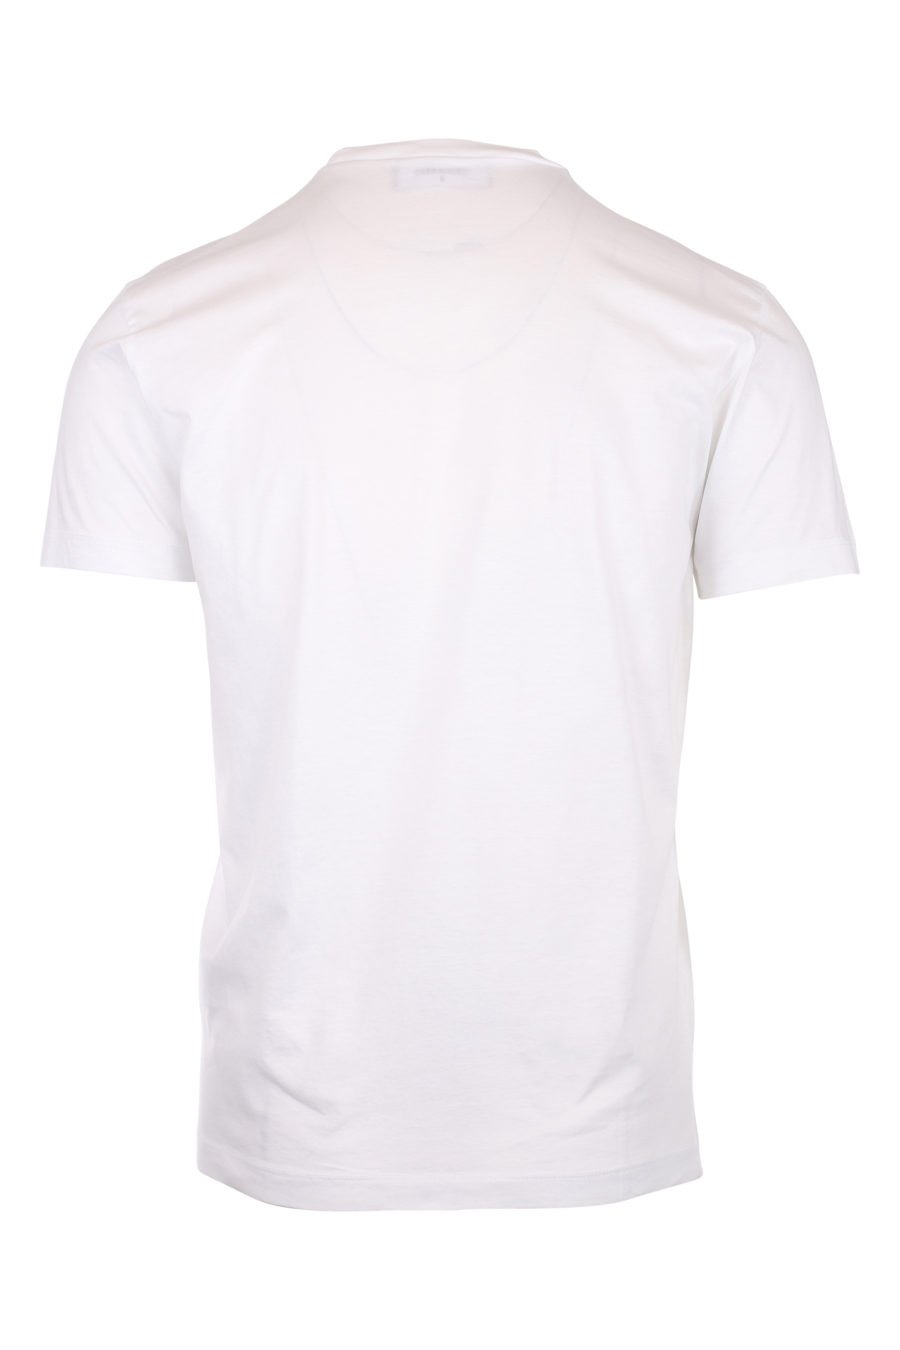 Camiseta blanca con logo "icon" - IMG 9768